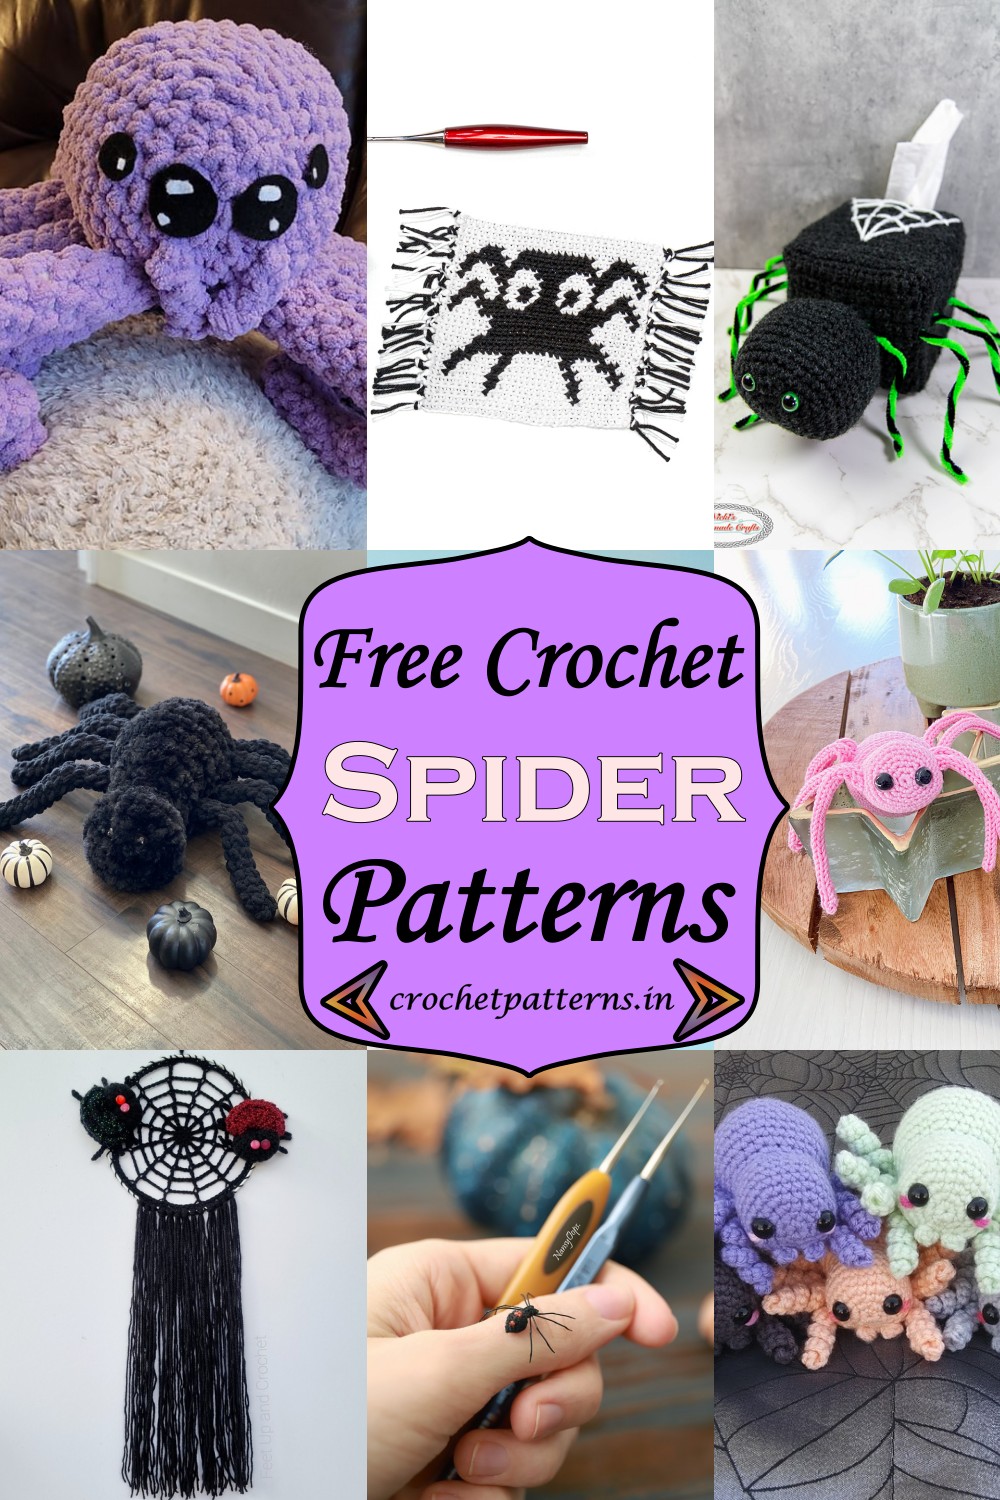 Free Crochet Spider Patterns